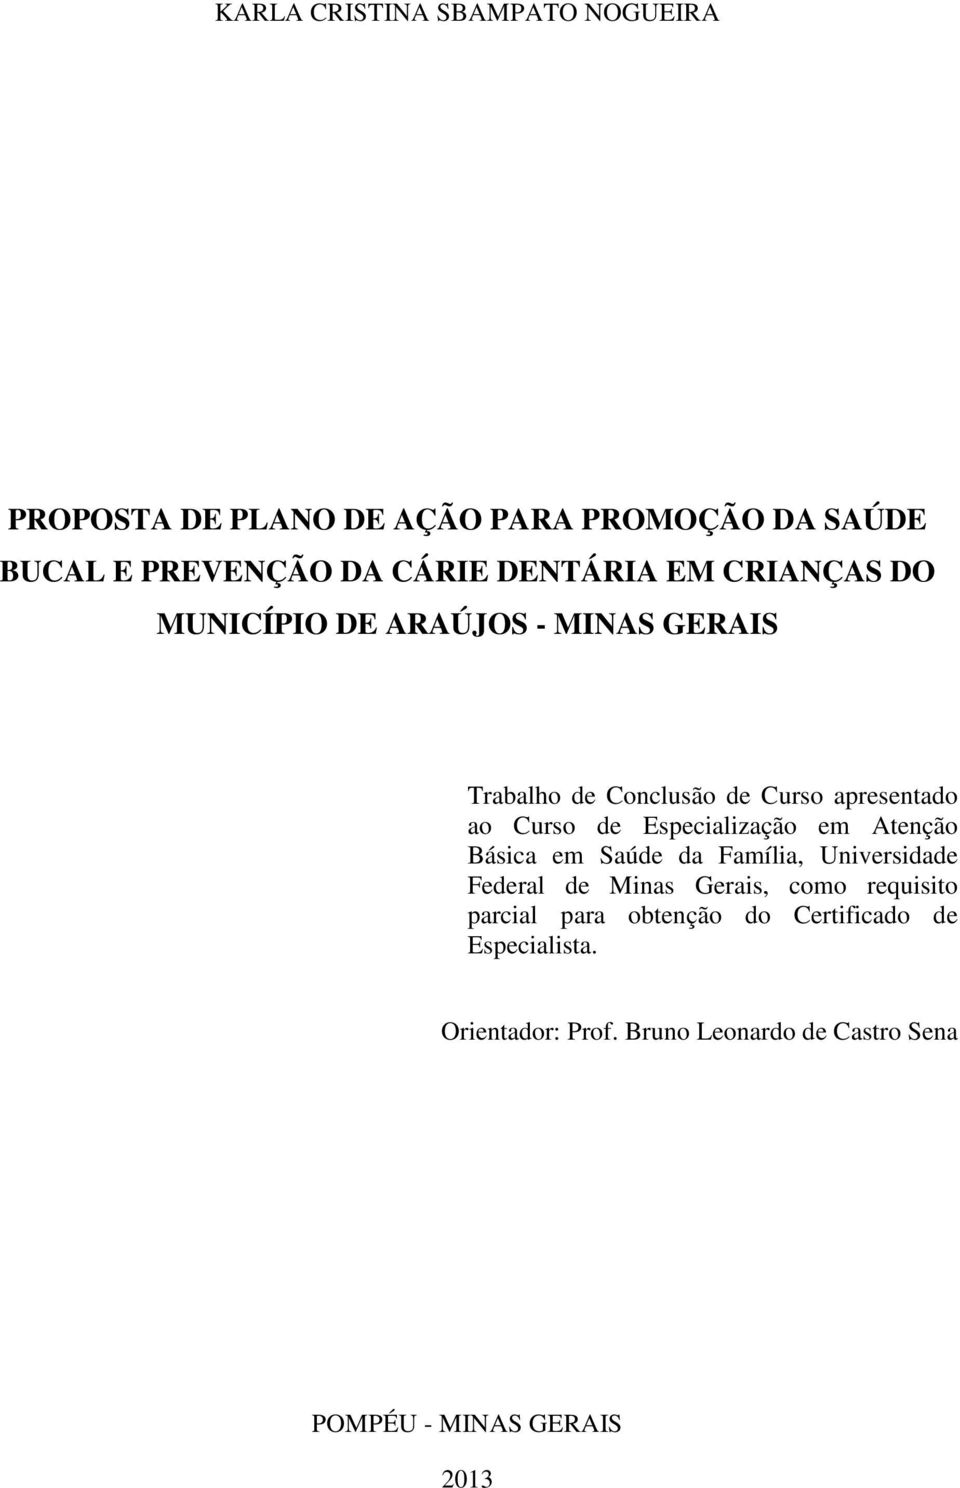 Especialização em Atenção Básica em Saúde da Família, Universidade Federal de Minas Gerais, como requisito parcial